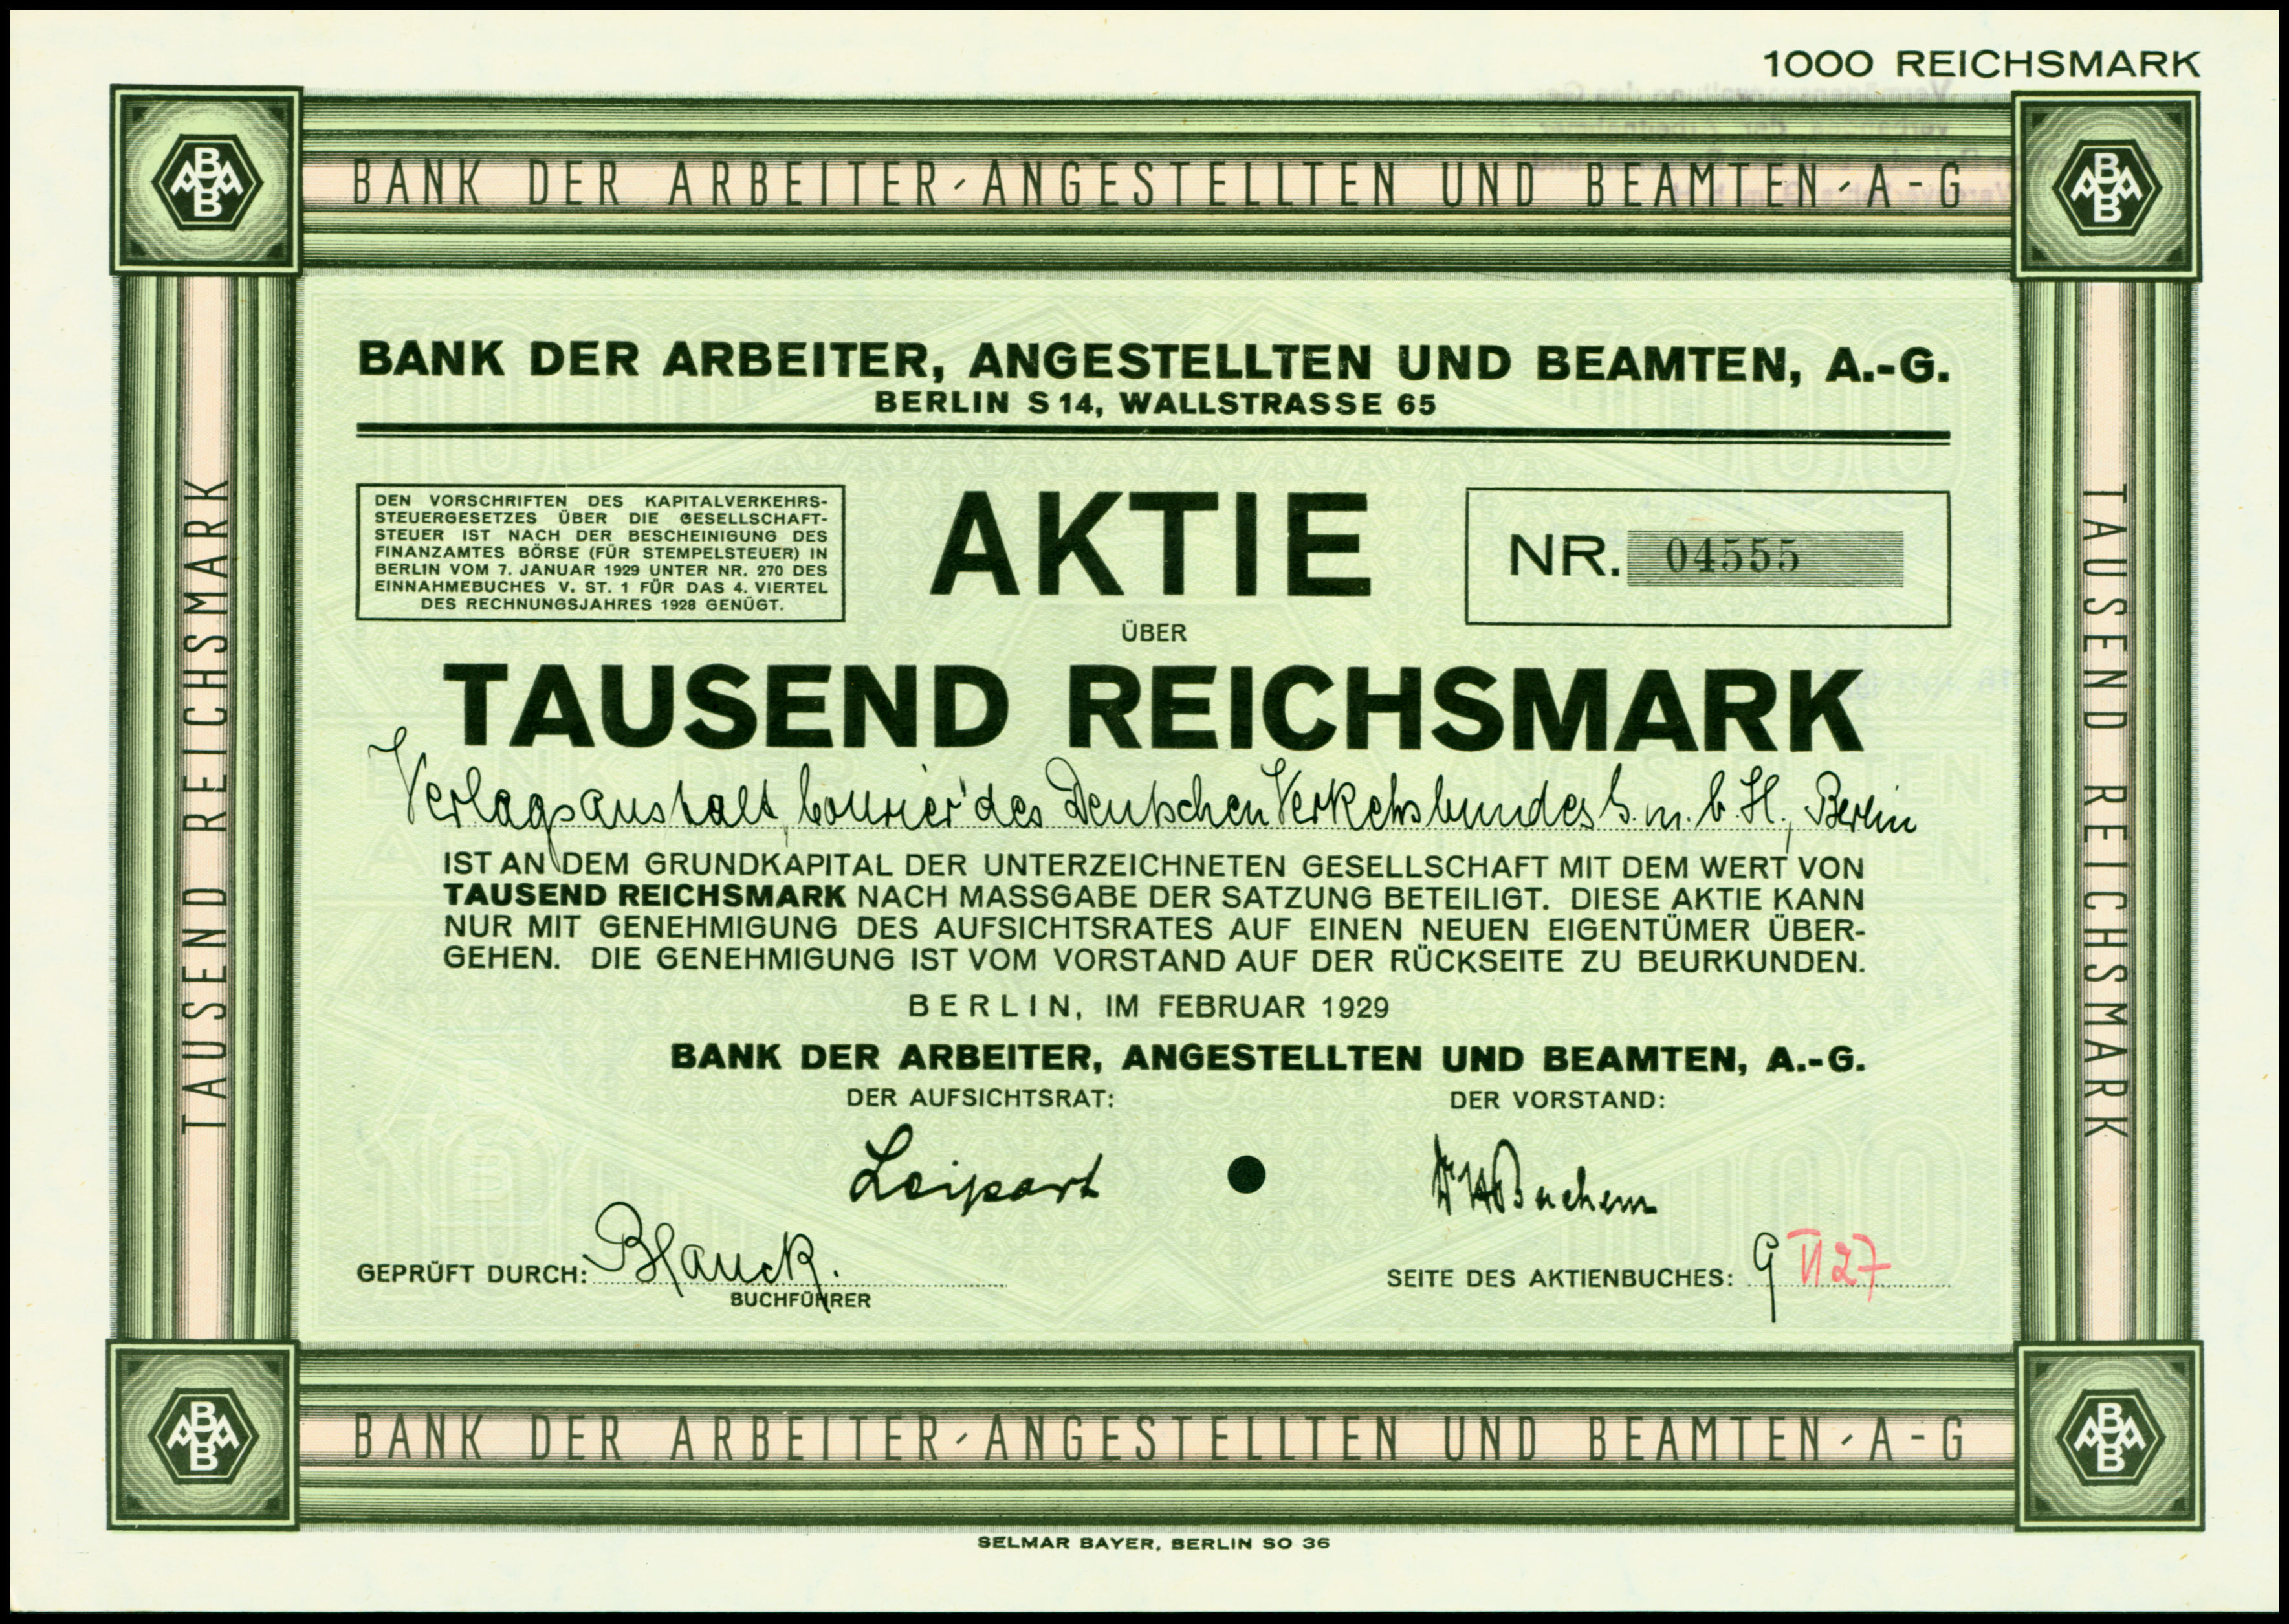 Der bank. Немецкие бонды 1924 года что это. Стоимость немецких бондов 1924 года. Немецкие бонды 1924 года цена. А die Gesellschaft der Gesellschaft.